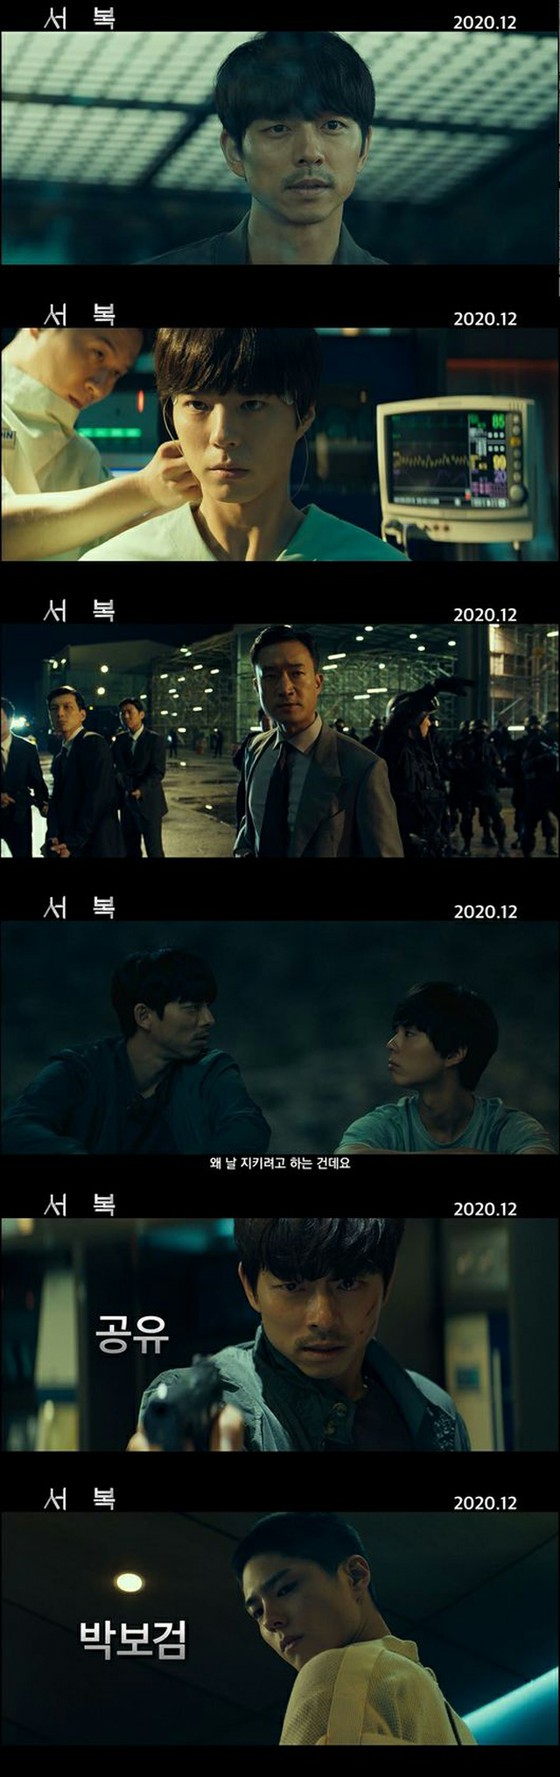 [Chính thức] Gong Yoo & Park Bo Gum đóng vai chính trong phim "Xu Fuku", lần đầu tiên công khai ấn bản teaser đầu tiên ... Từ lãng mạn gợi cảm đến hình ảnh choáng ngợp